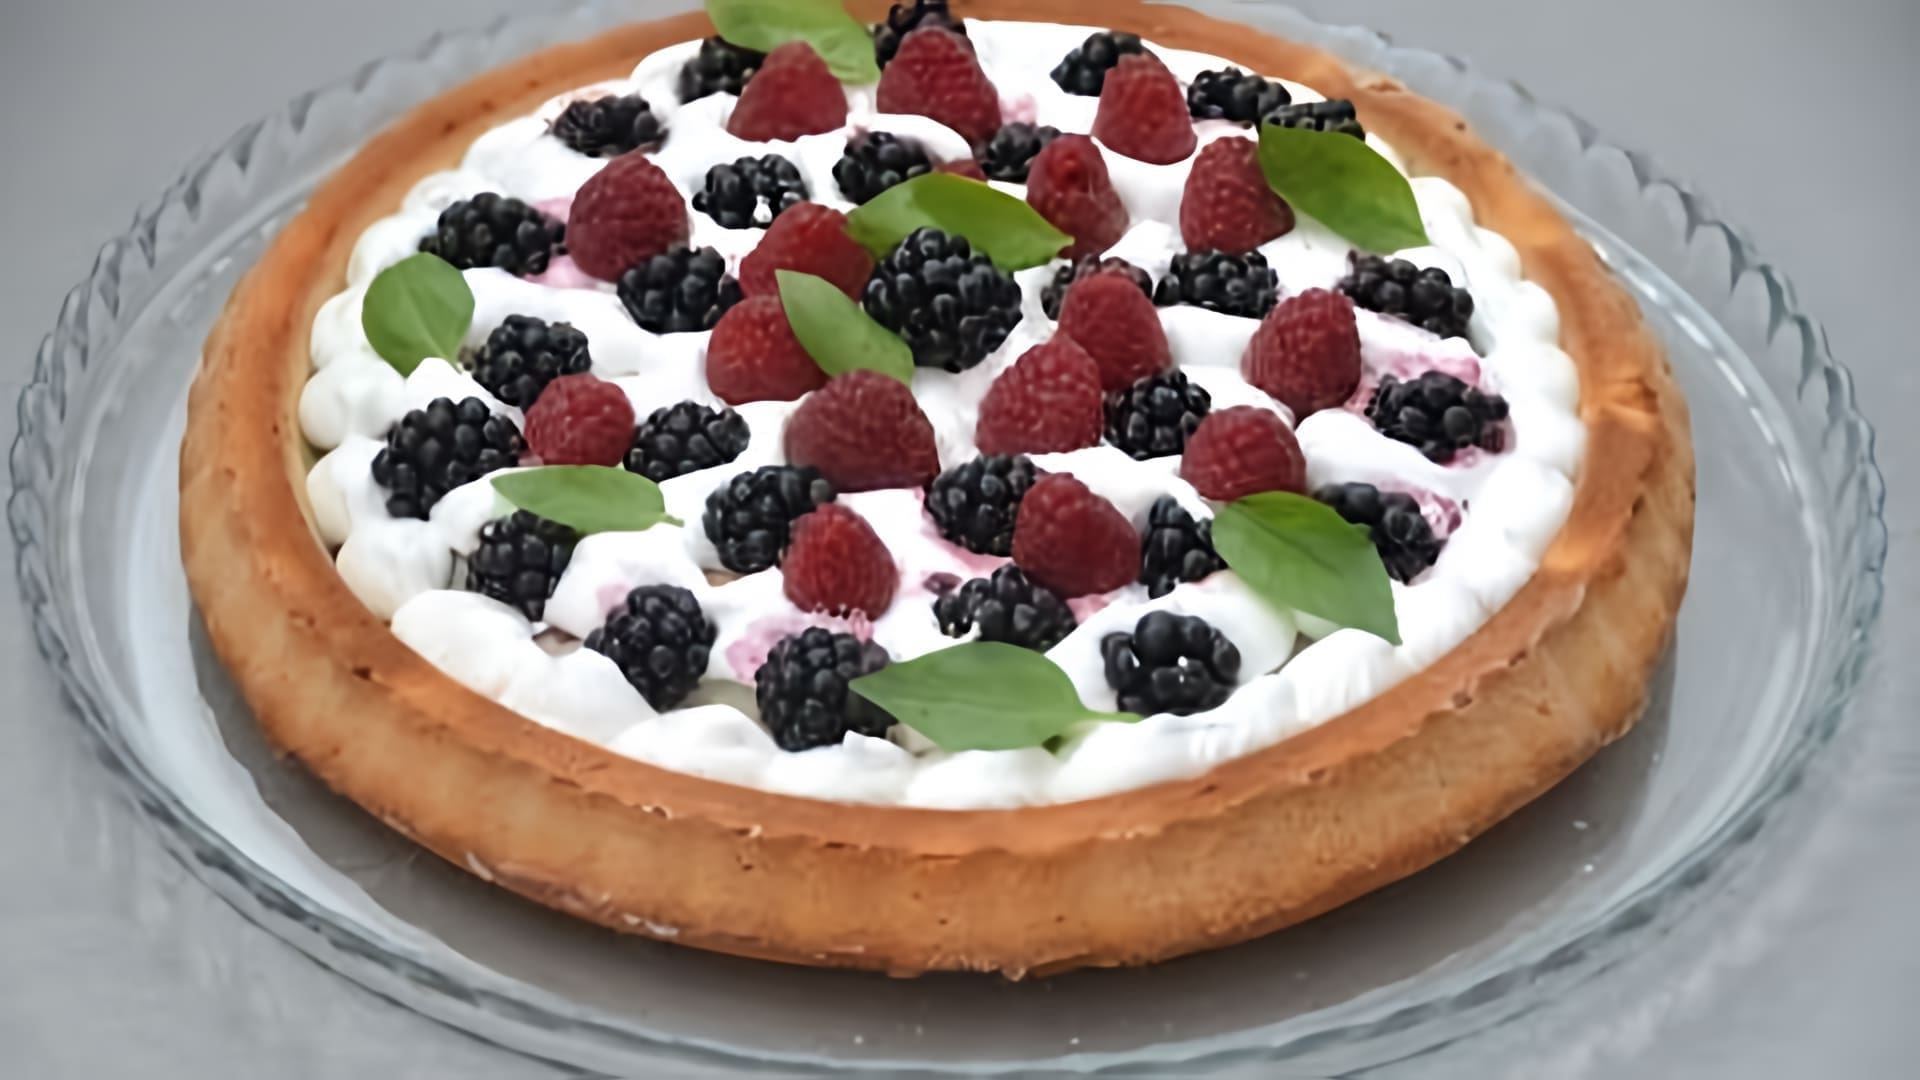 В этом видео демонстрируется рецепт приготовления творожного пирога с ежевикой